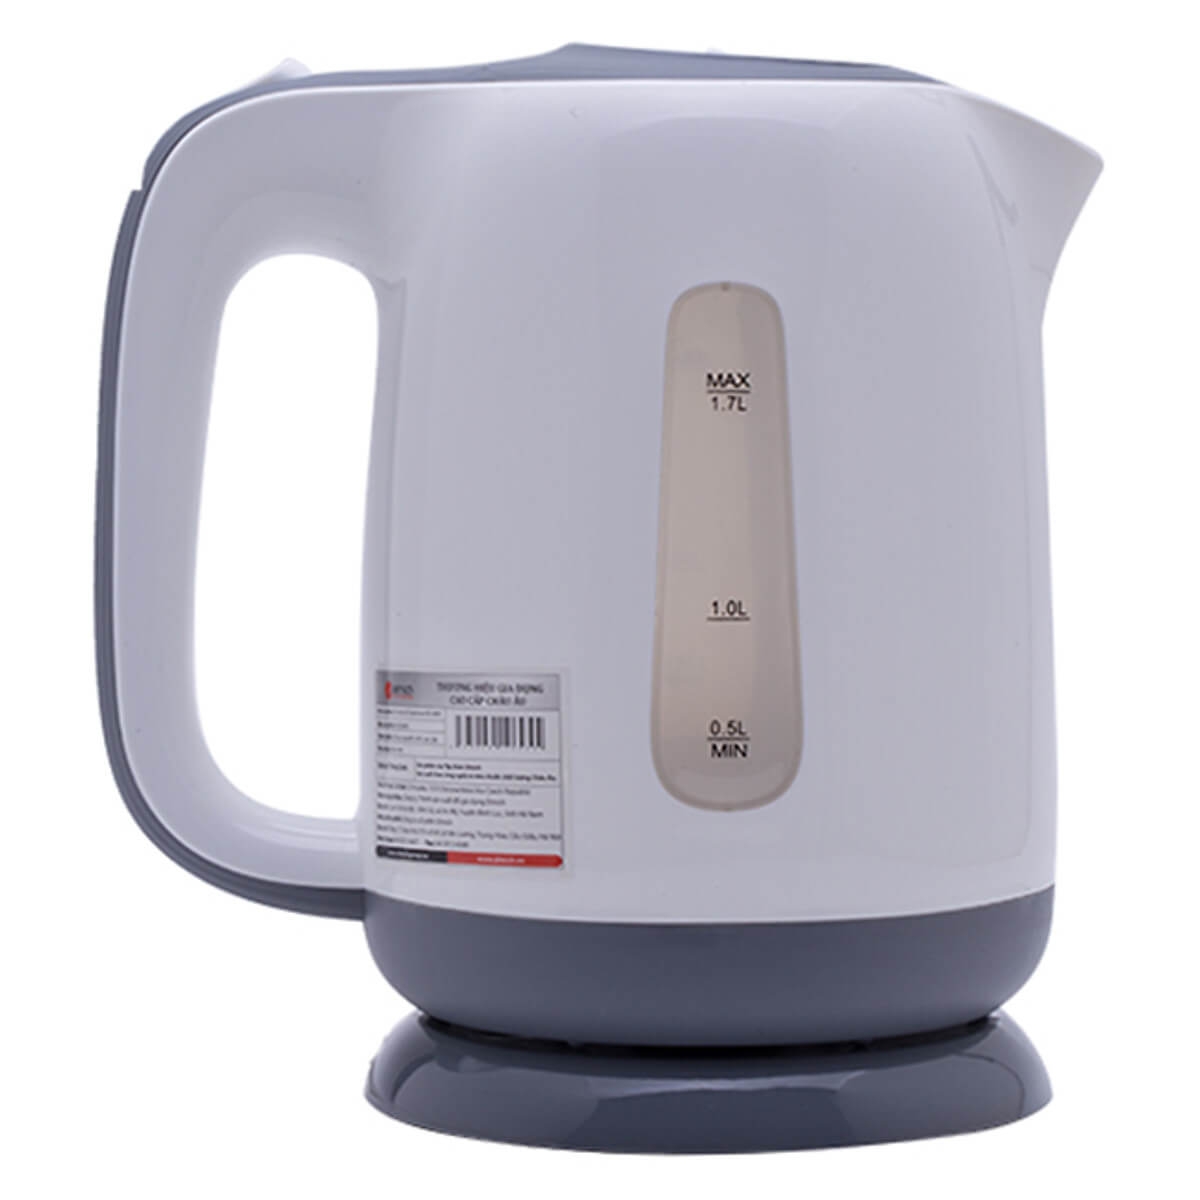 Bình Đun Siêu Tốc Smartcook KES-0695 - 1.7L